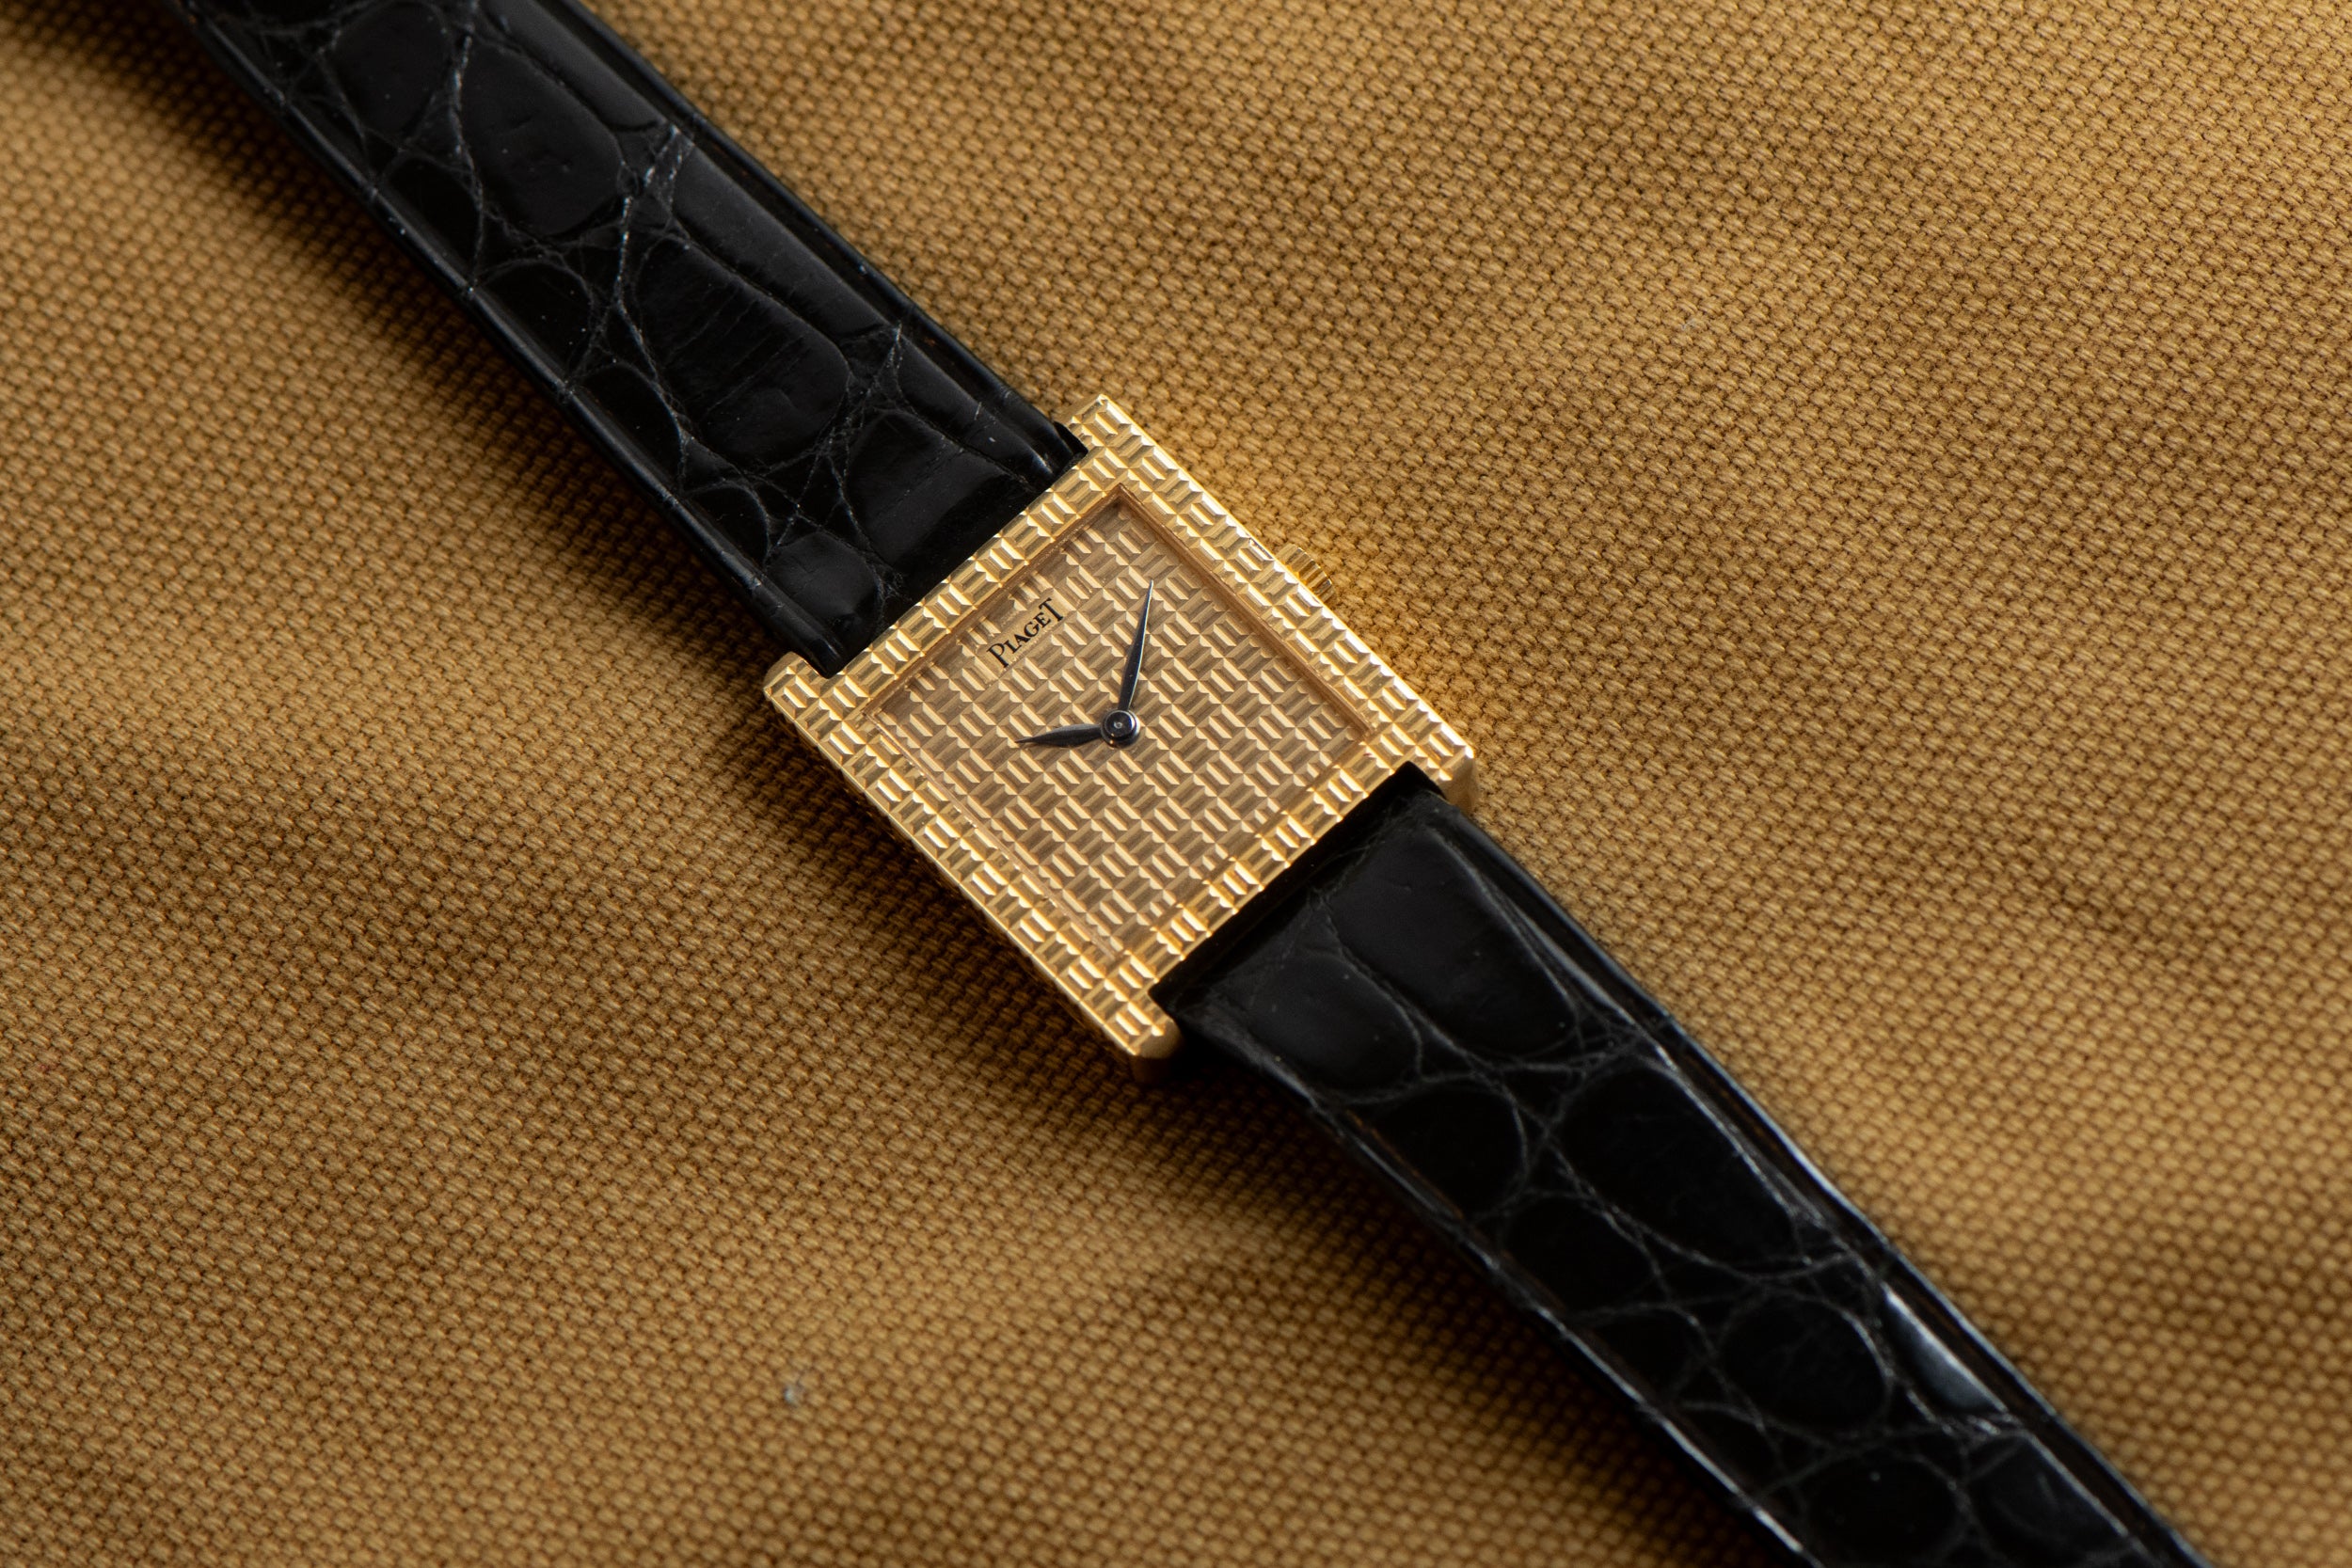 Piaget 'Onyx' Tank-style Dress Watch